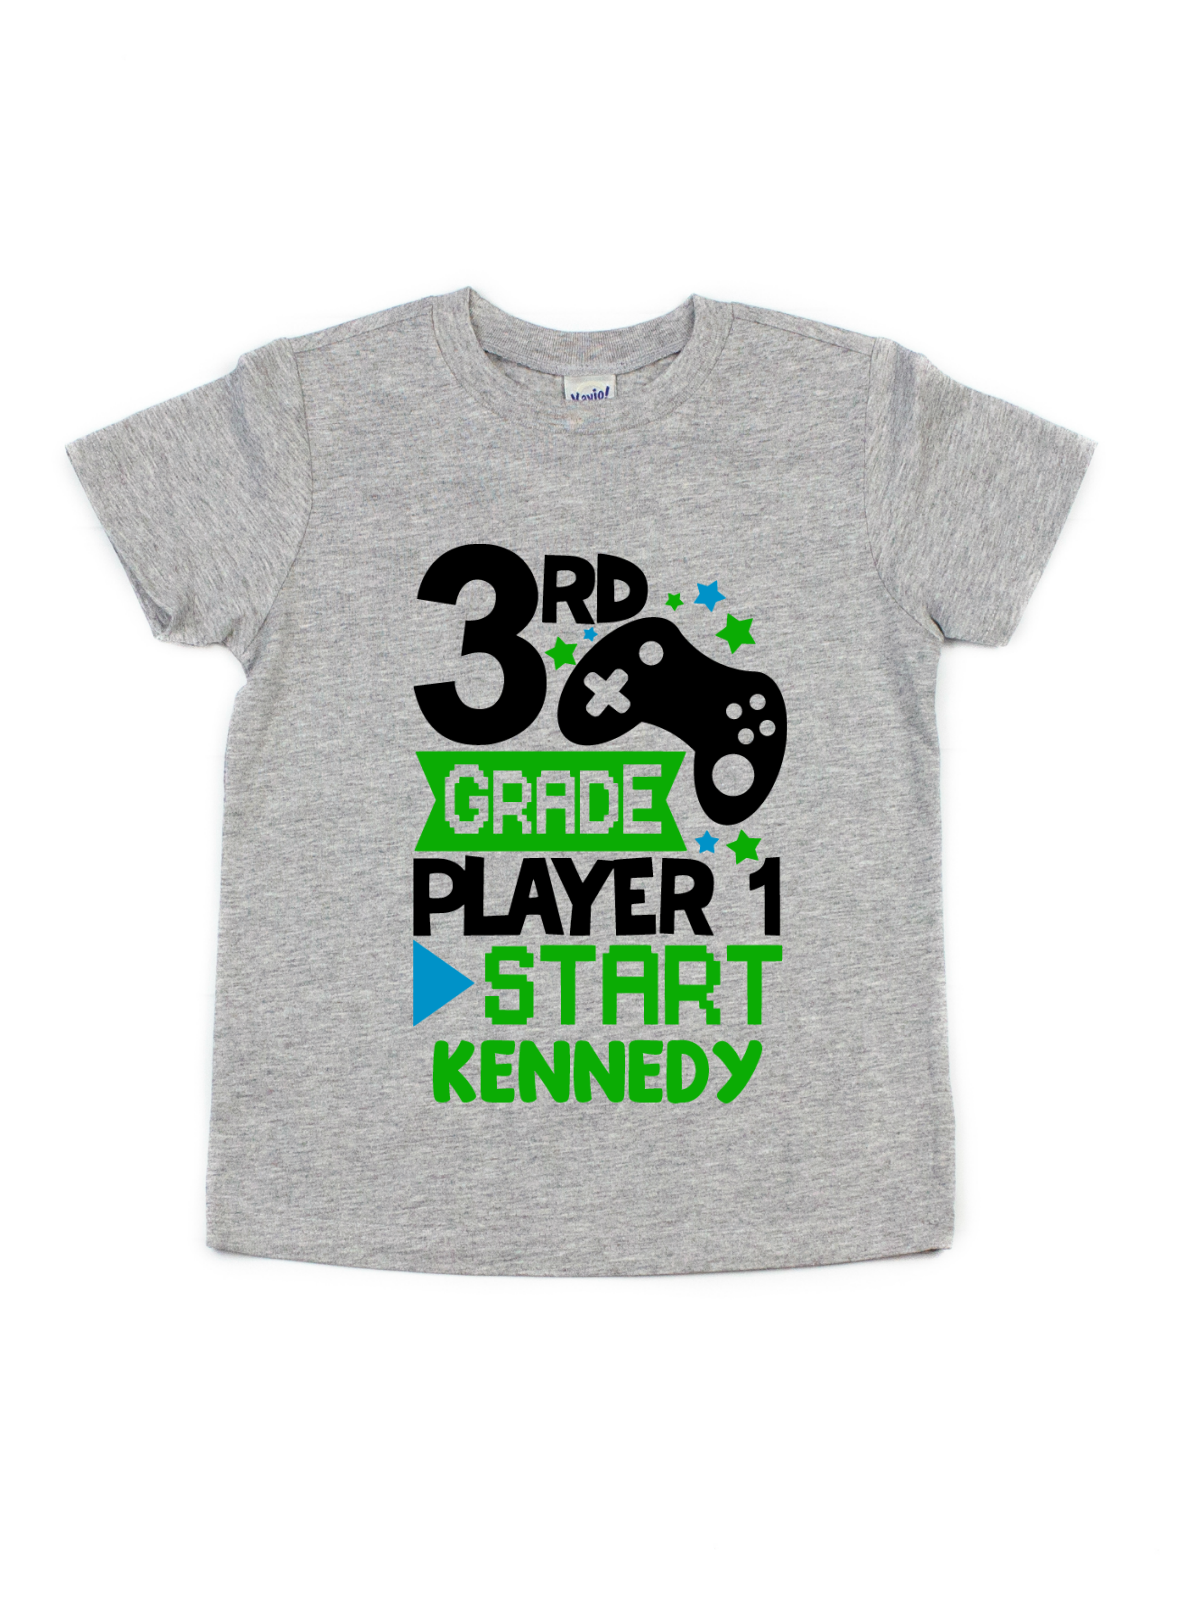 3rd grade player 1 start kids gamer school shirt